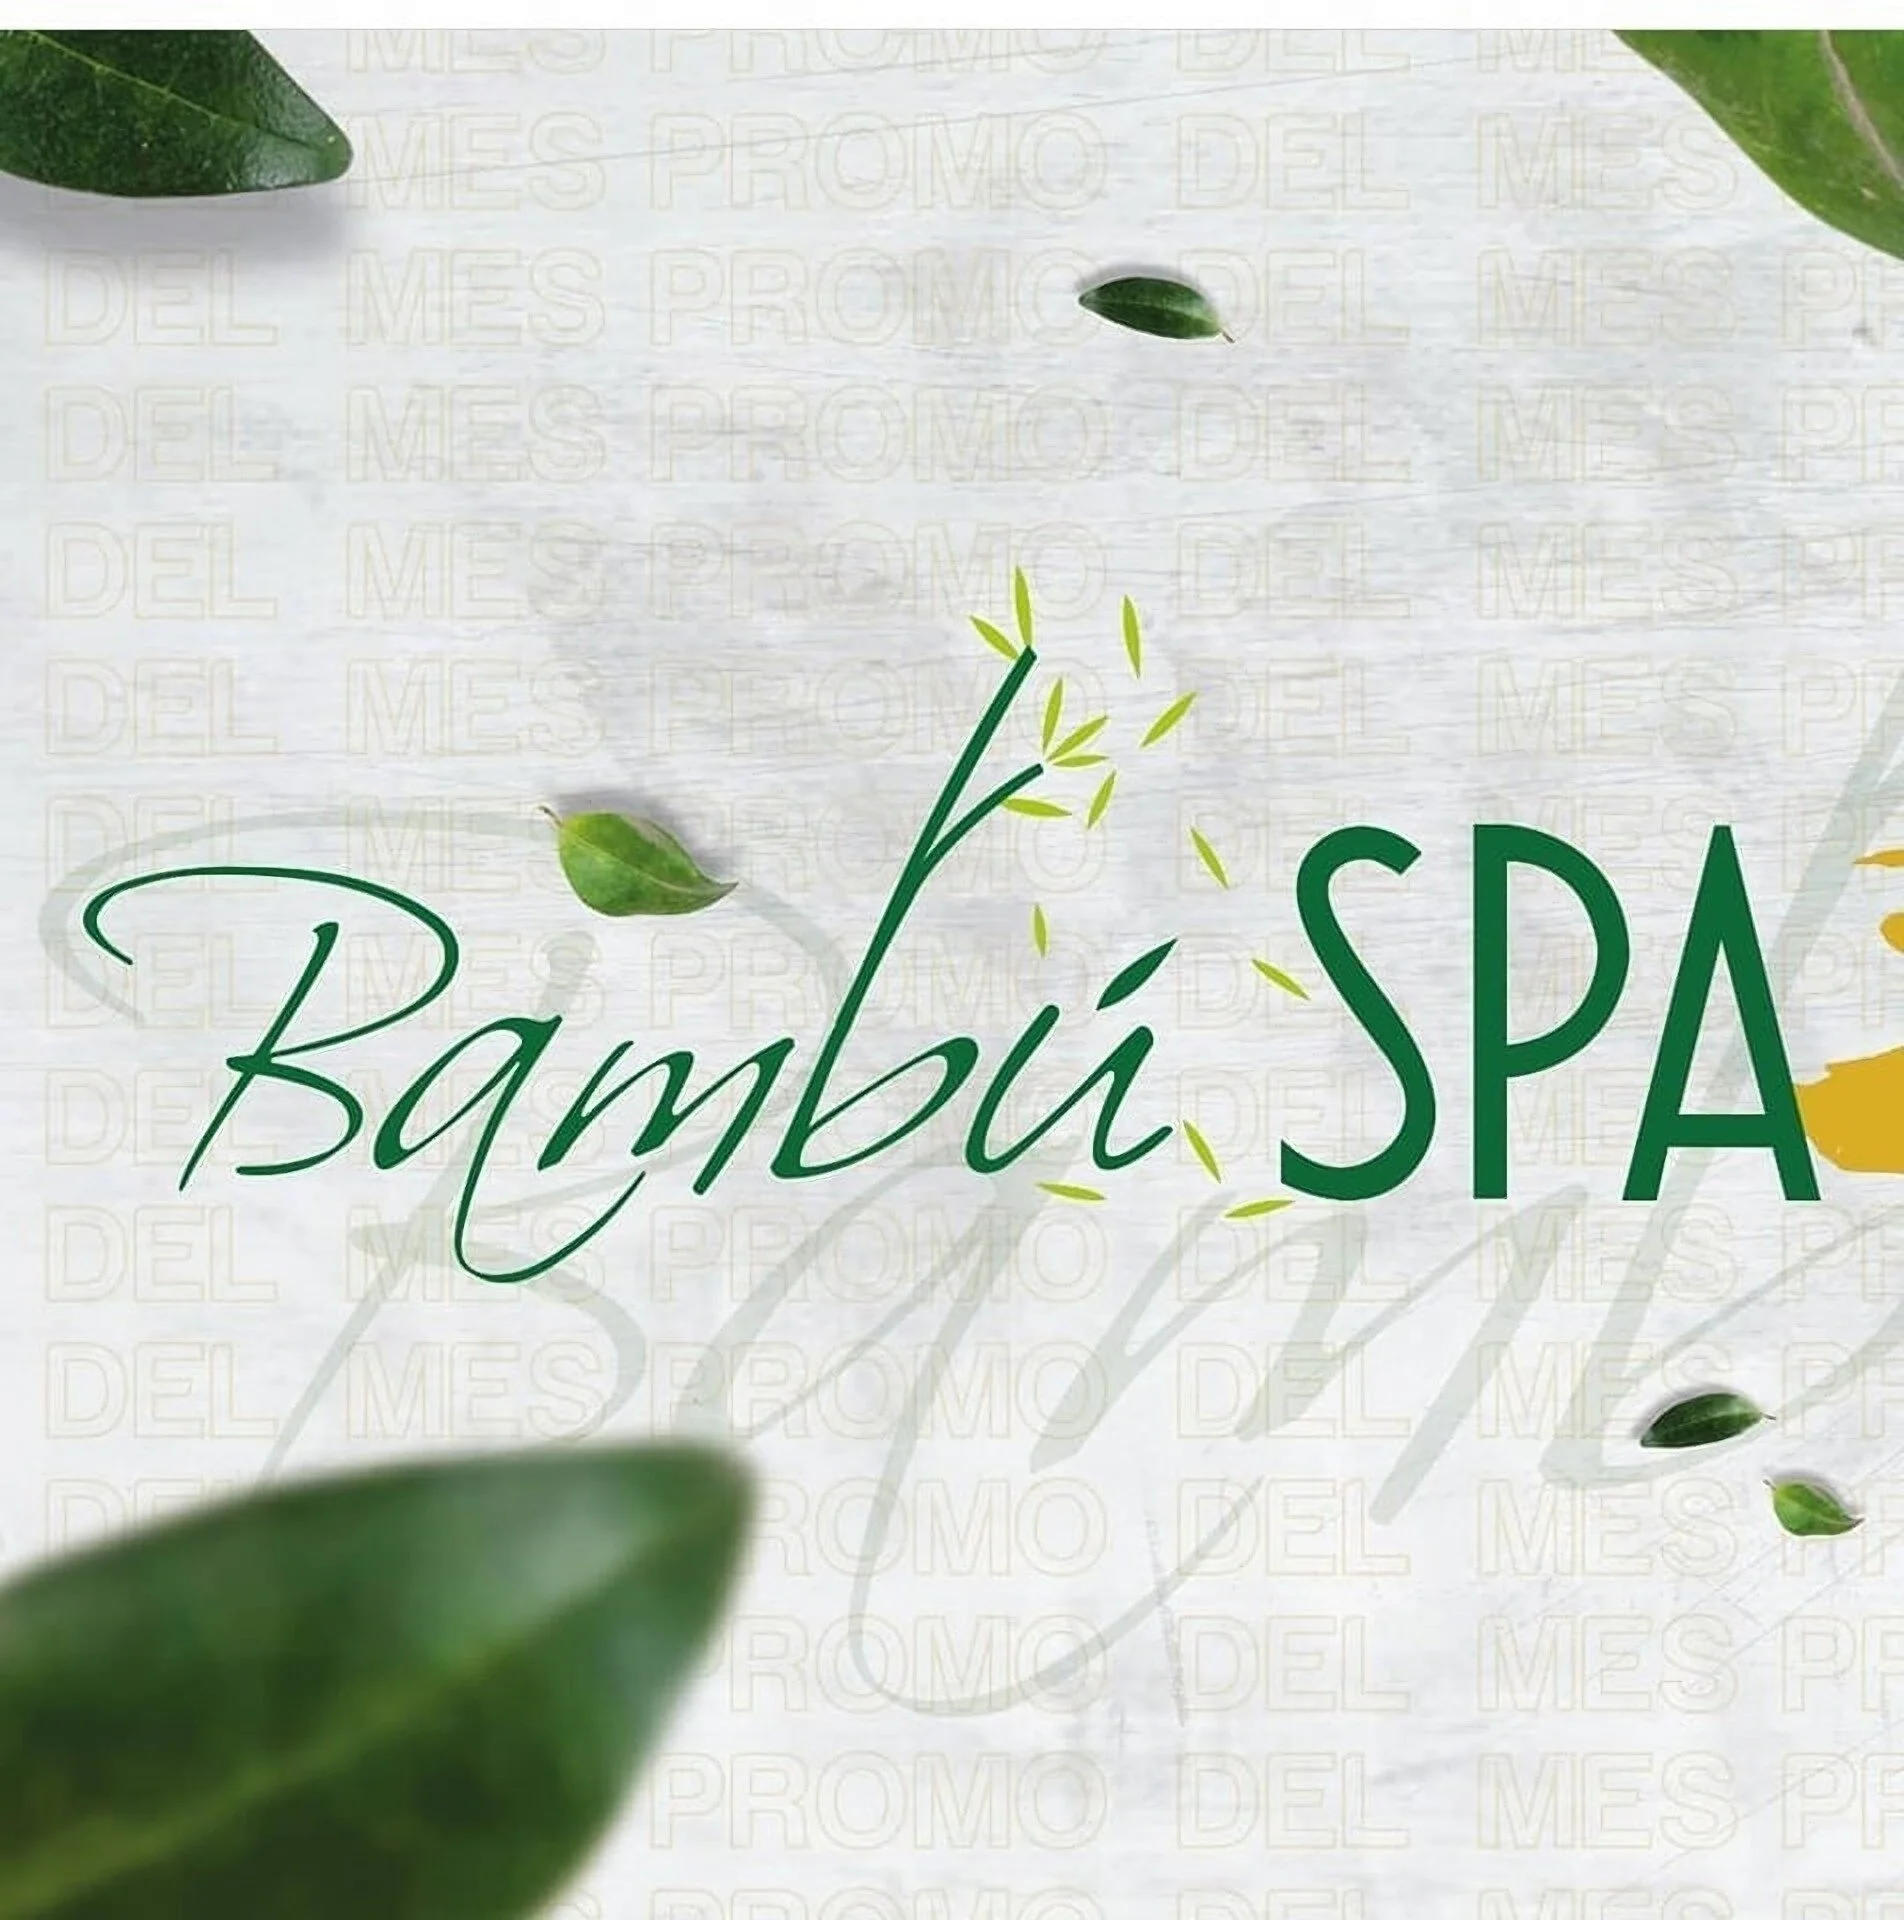 Spa-bambu-spa-8212